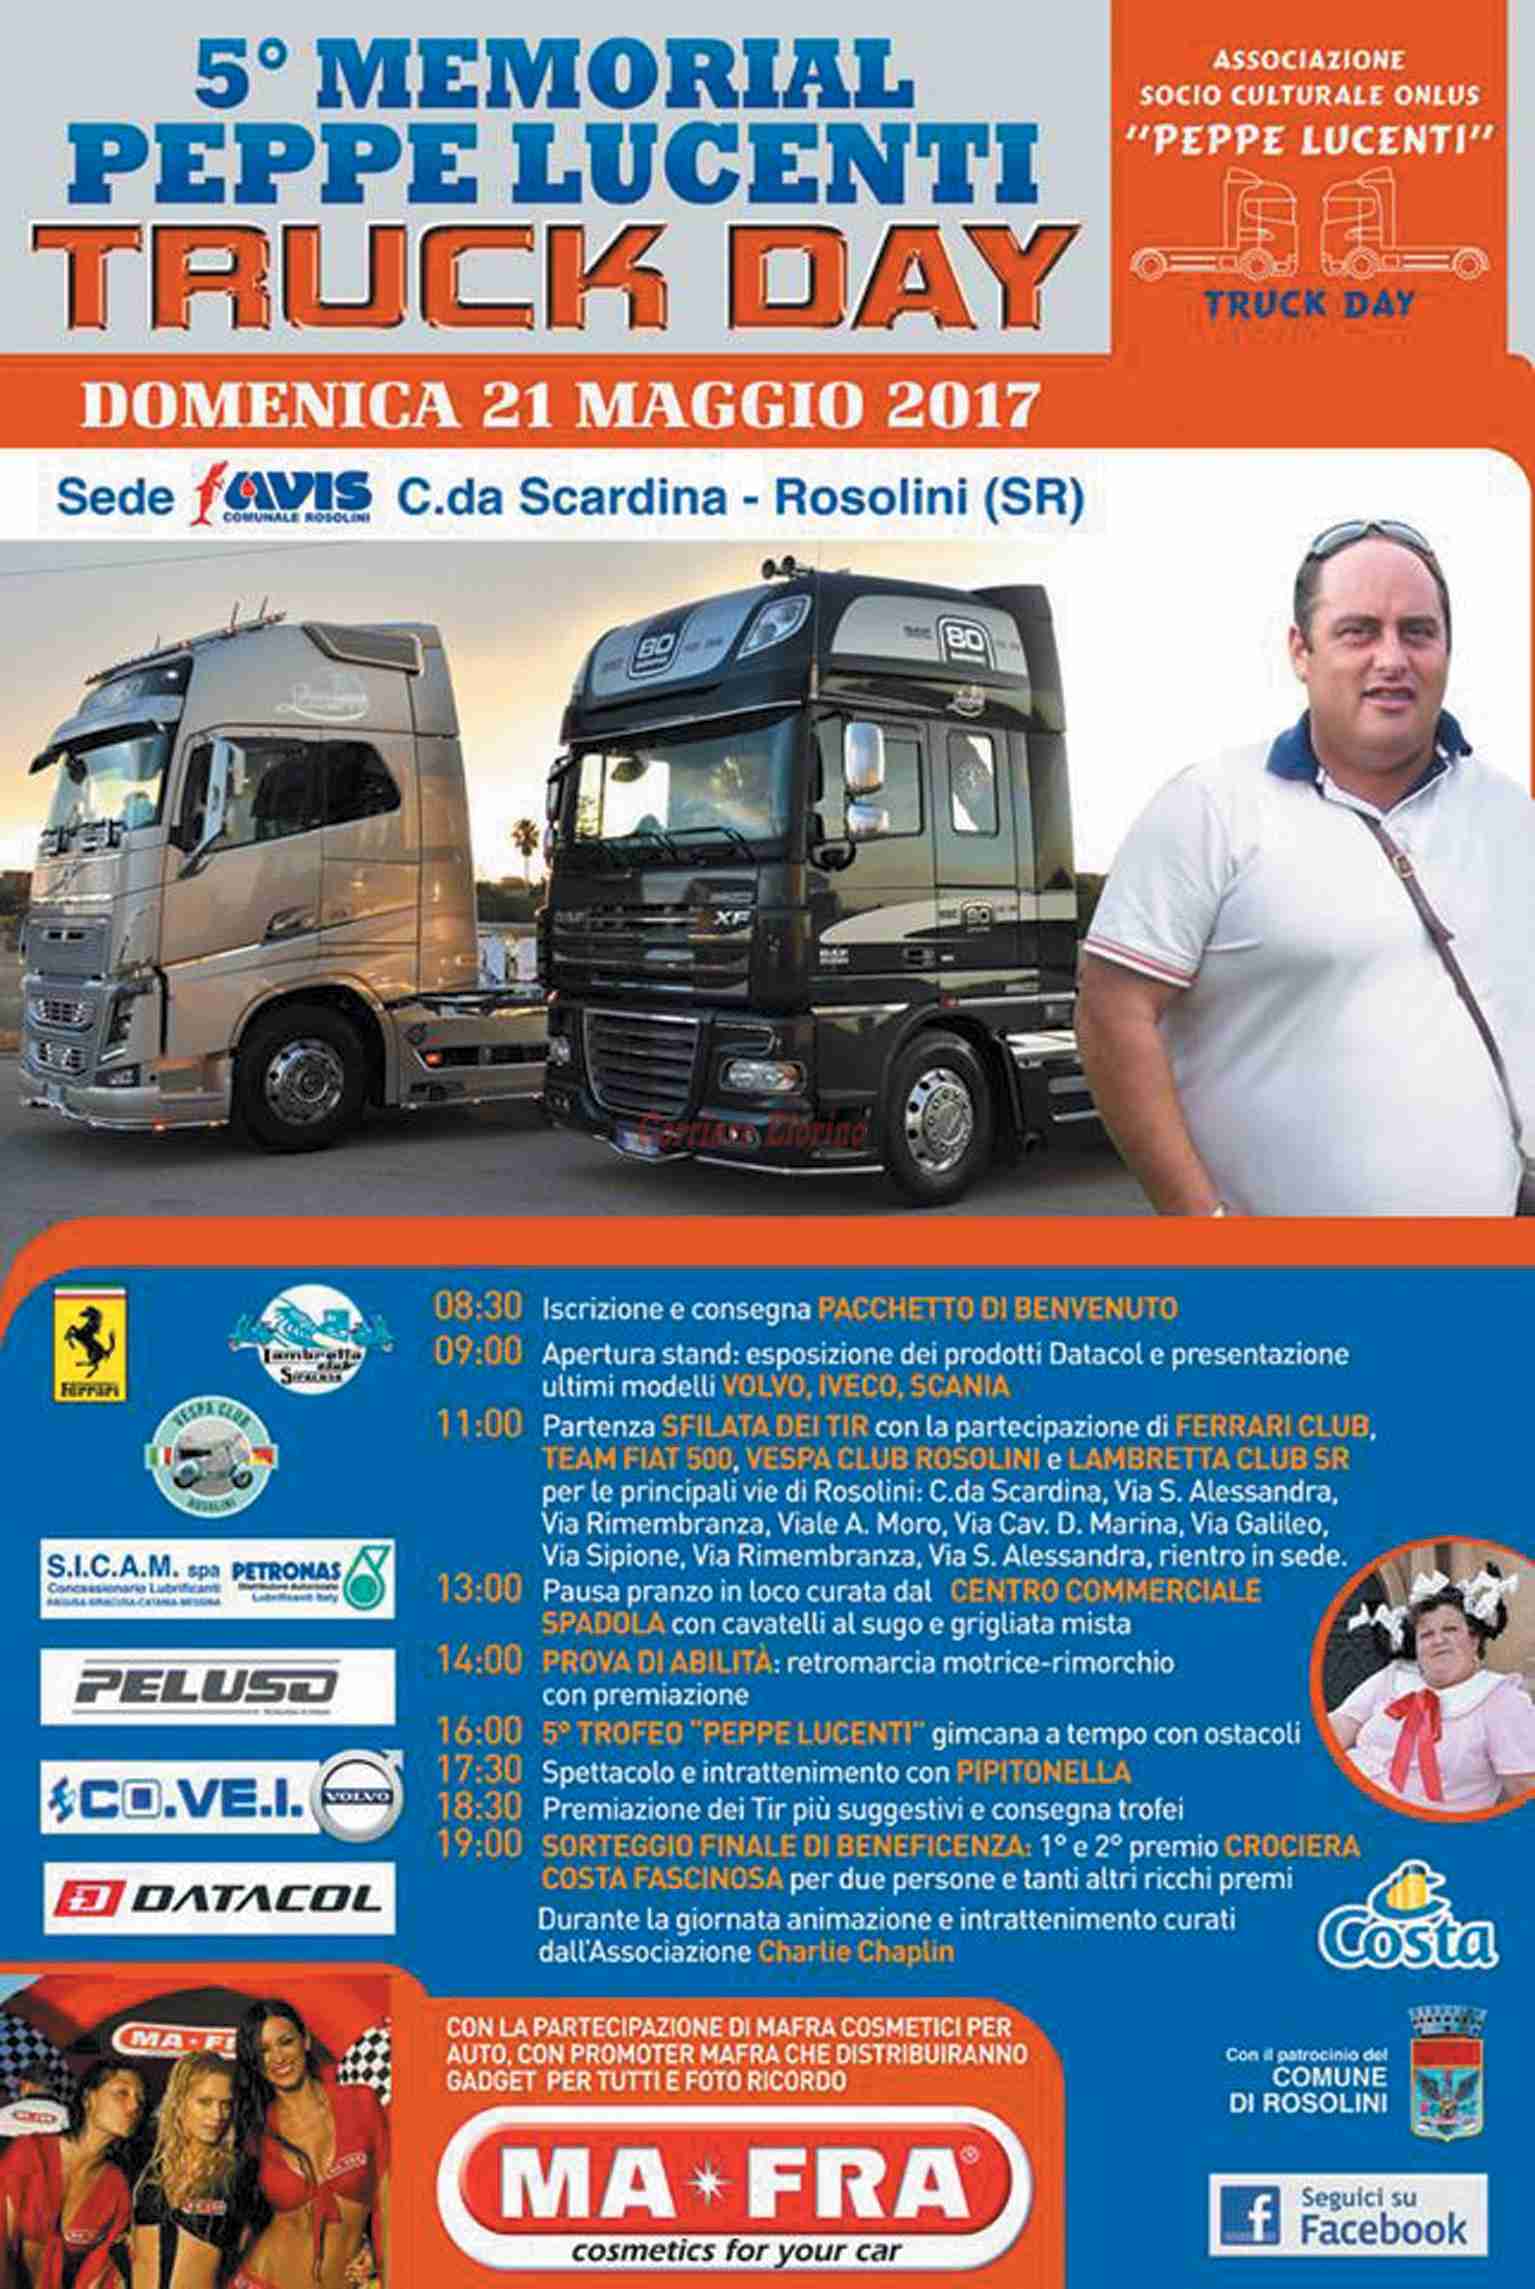 Domenica 21 maggio ritorna il “Truck Day” in ricordo di Peppe Lucenti